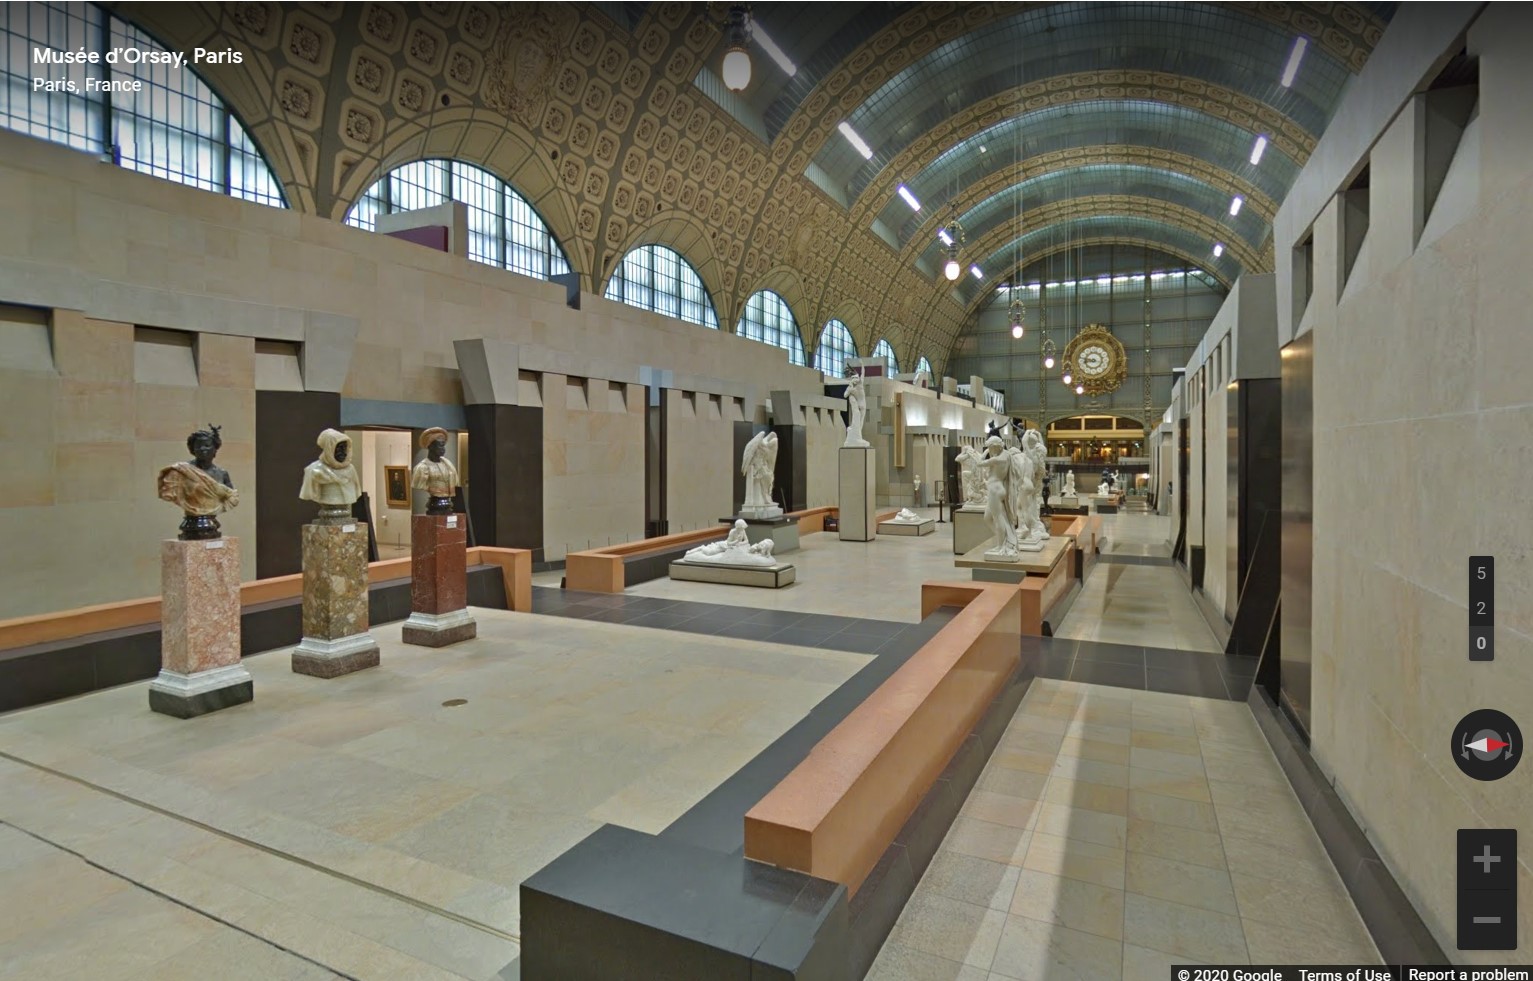 Musée d’Orsay, Paris, France